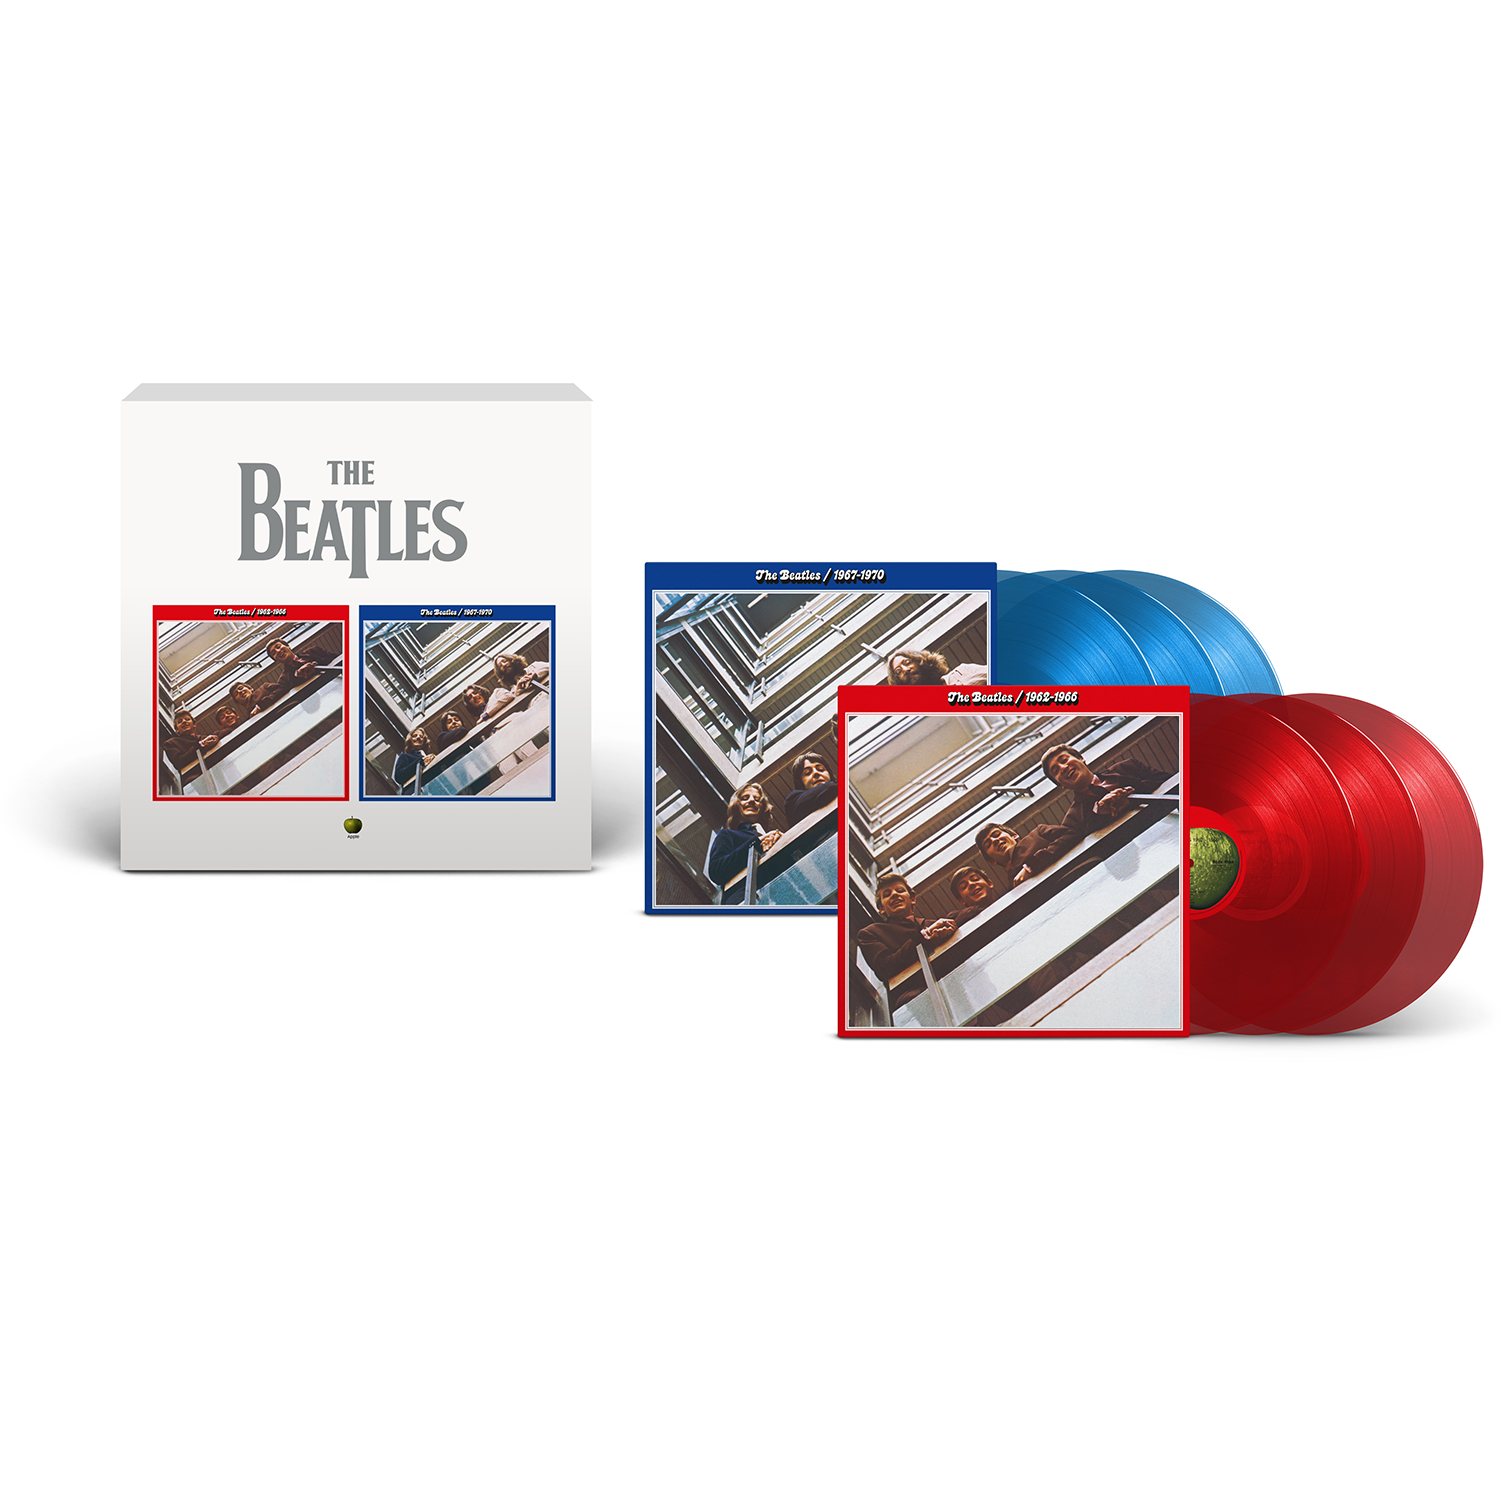 The Beatles - The Beatles 1962–1966 & The Beatles 1967-1970 (2023 Edition) Limited Edition 6LP Colour Red & Blue Albums